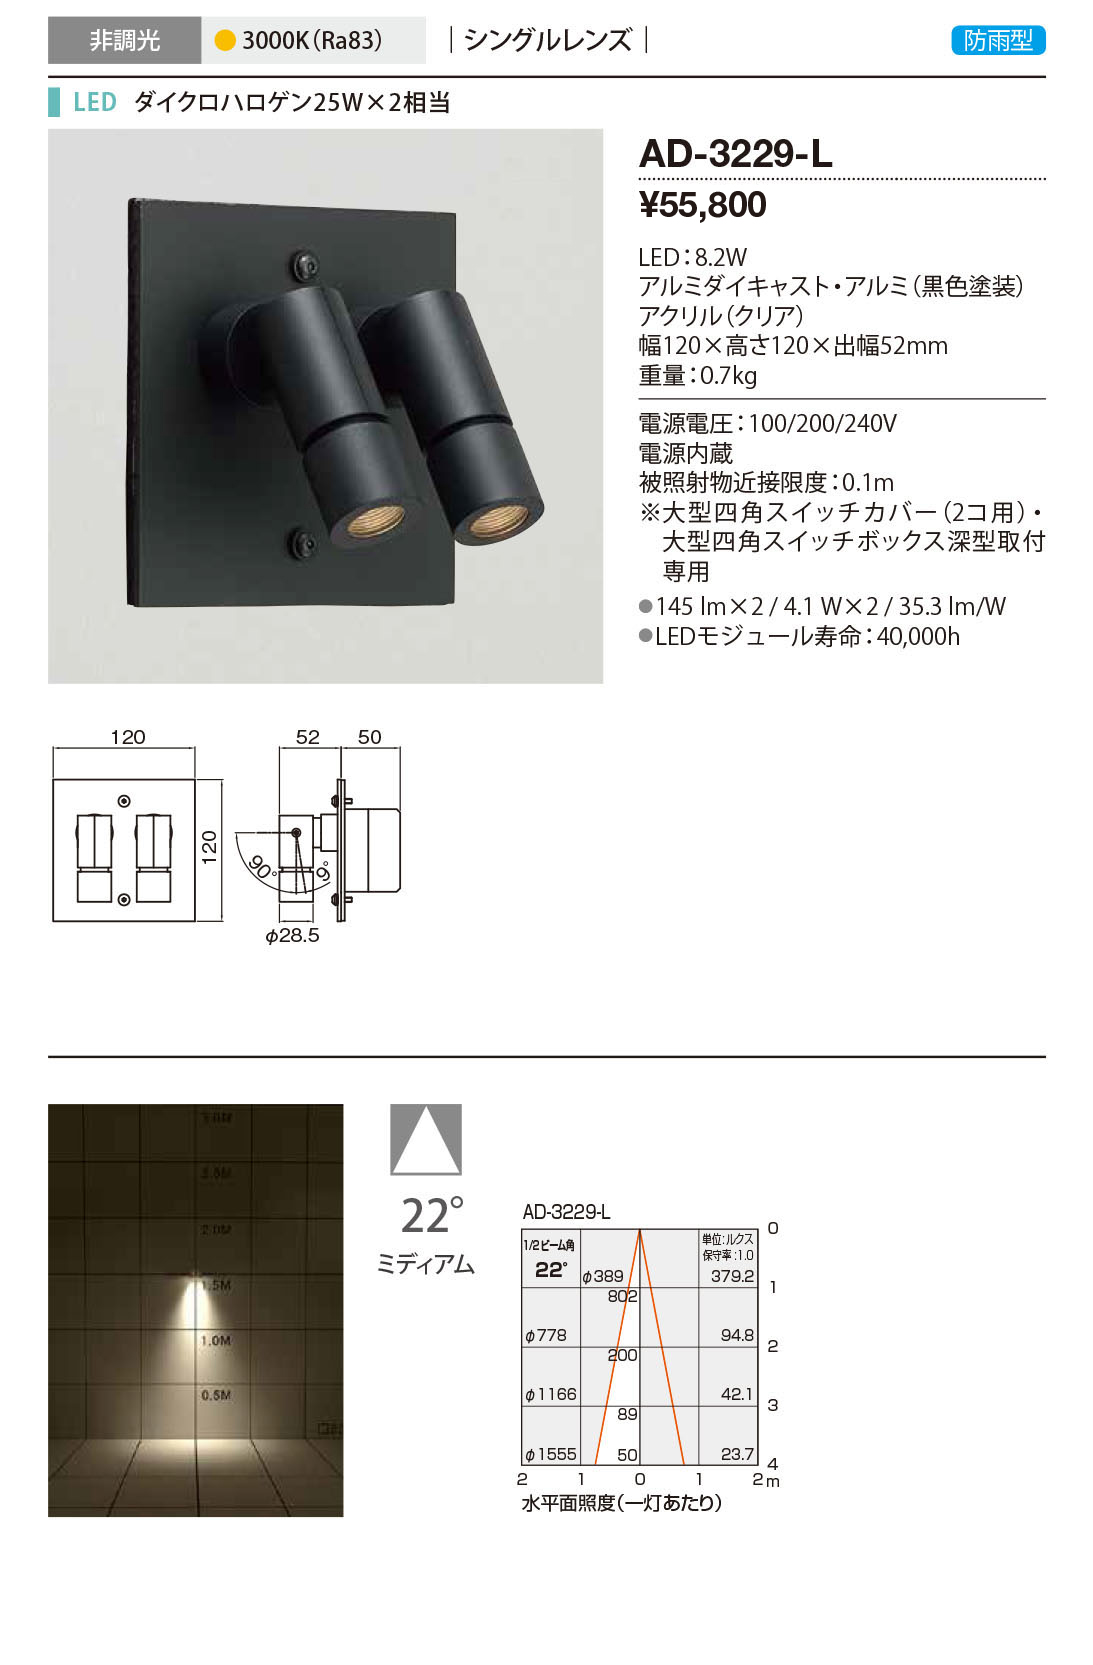 山田照明 コンパクトスポットネオ100 屋外スポットライト 黒 LED 電球色 調光 広角 AD-3237-L - 5